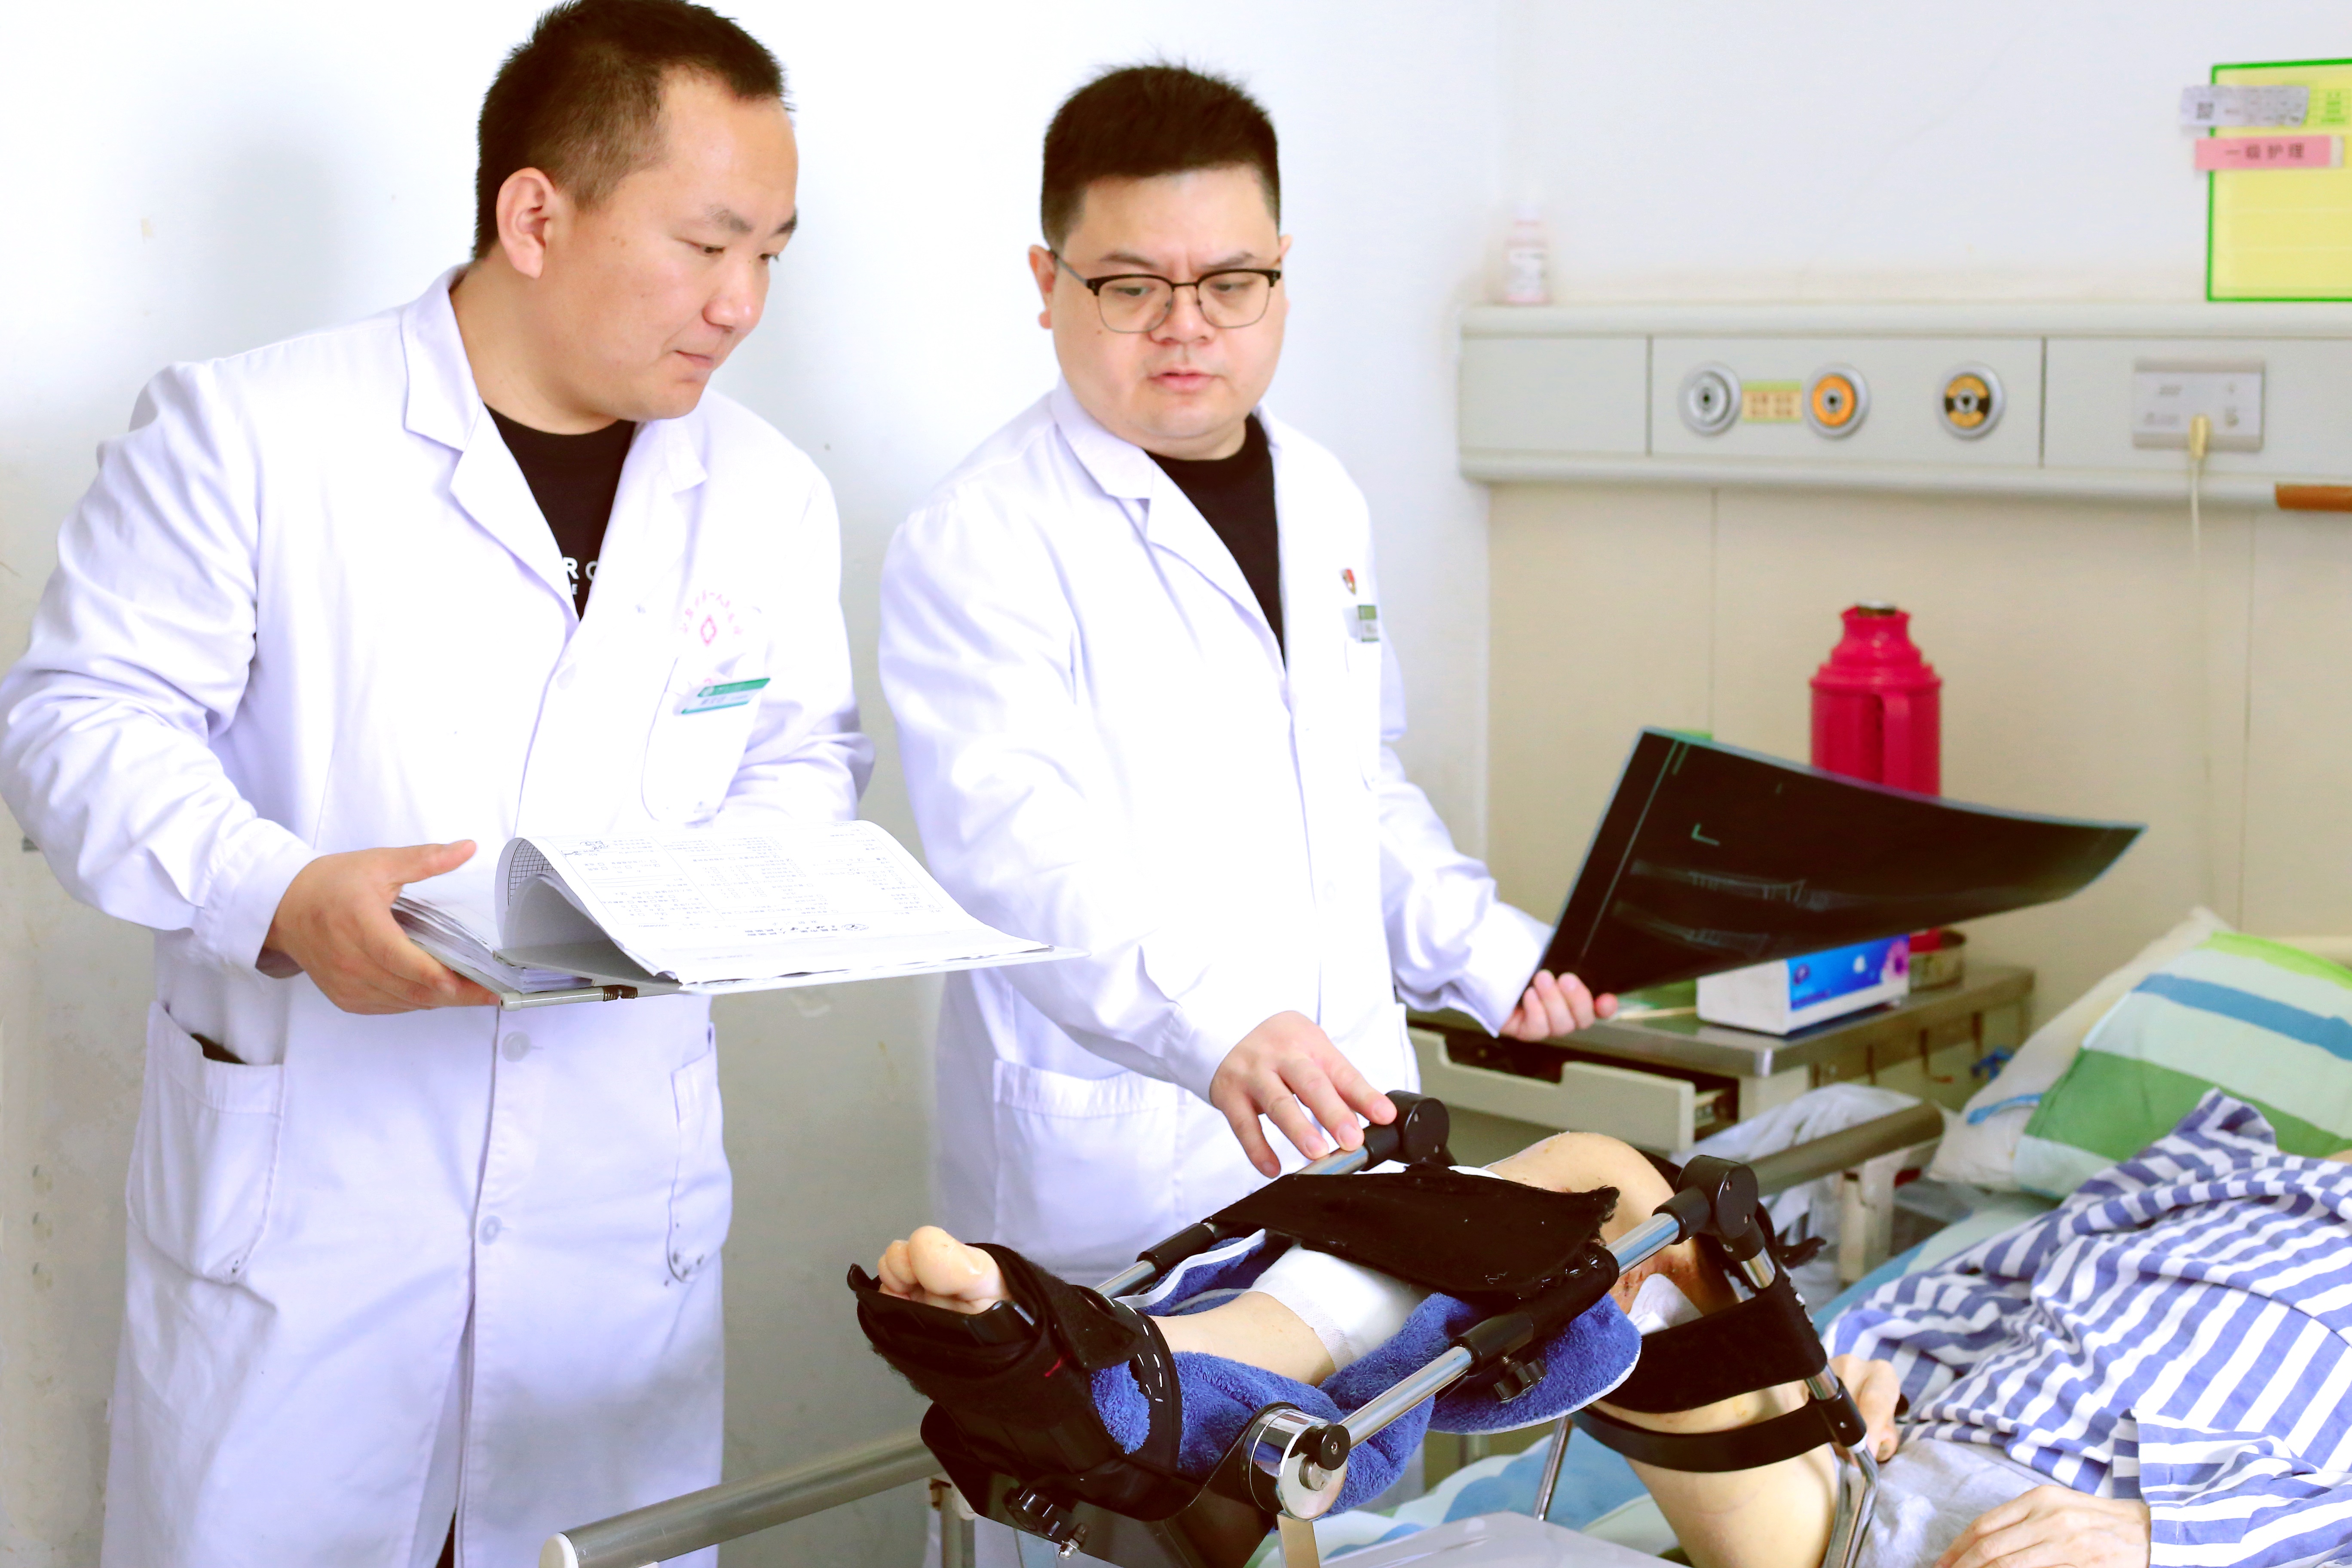 1 吨多重物砸断腿 宜昌市第一人民医院开通急诊手术绿色通道为患者保驾护航